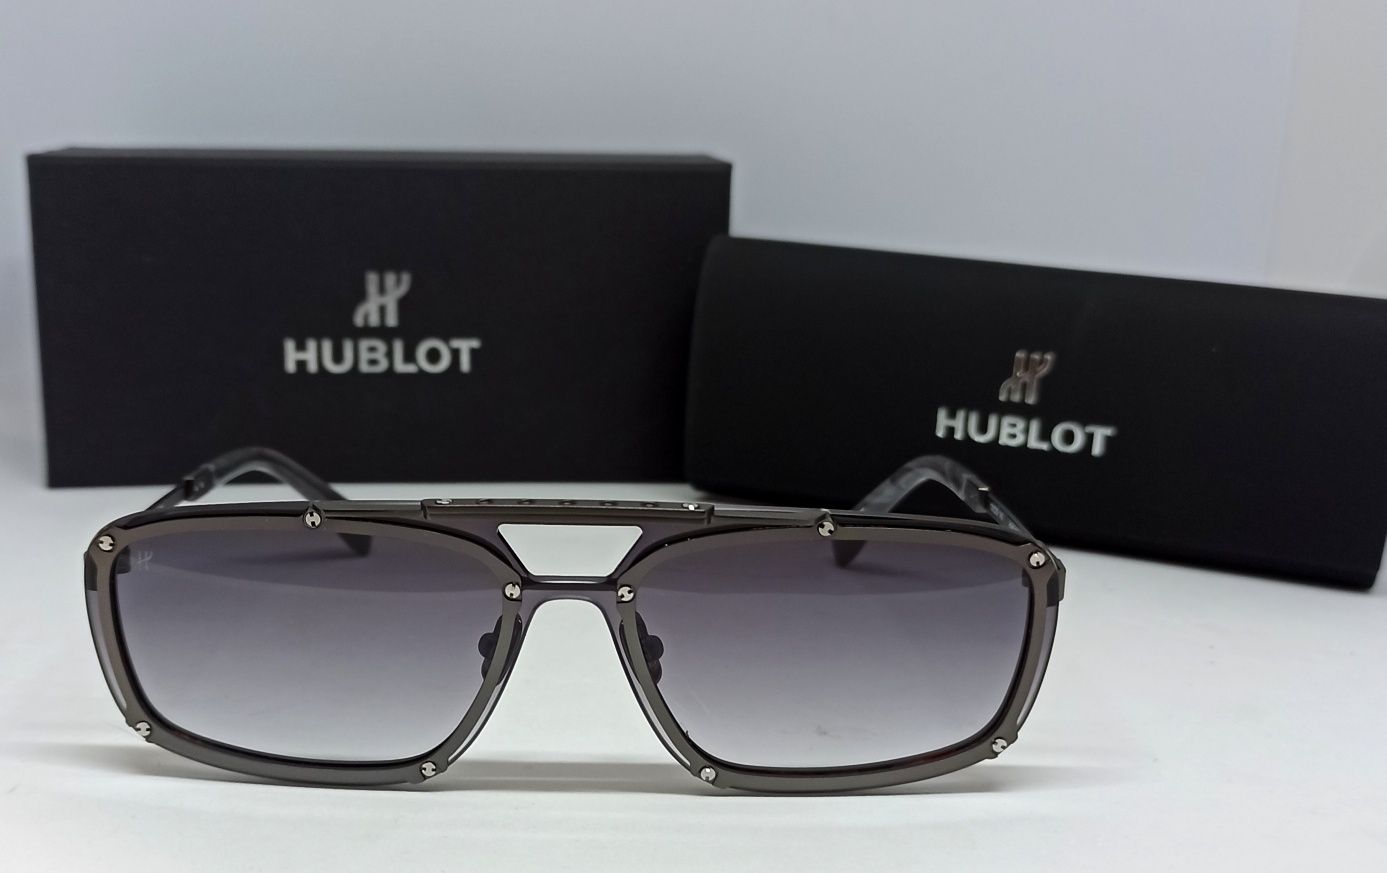 HUBLOT H 040 очки унисекс серо фиолетовый градиент в сером металле